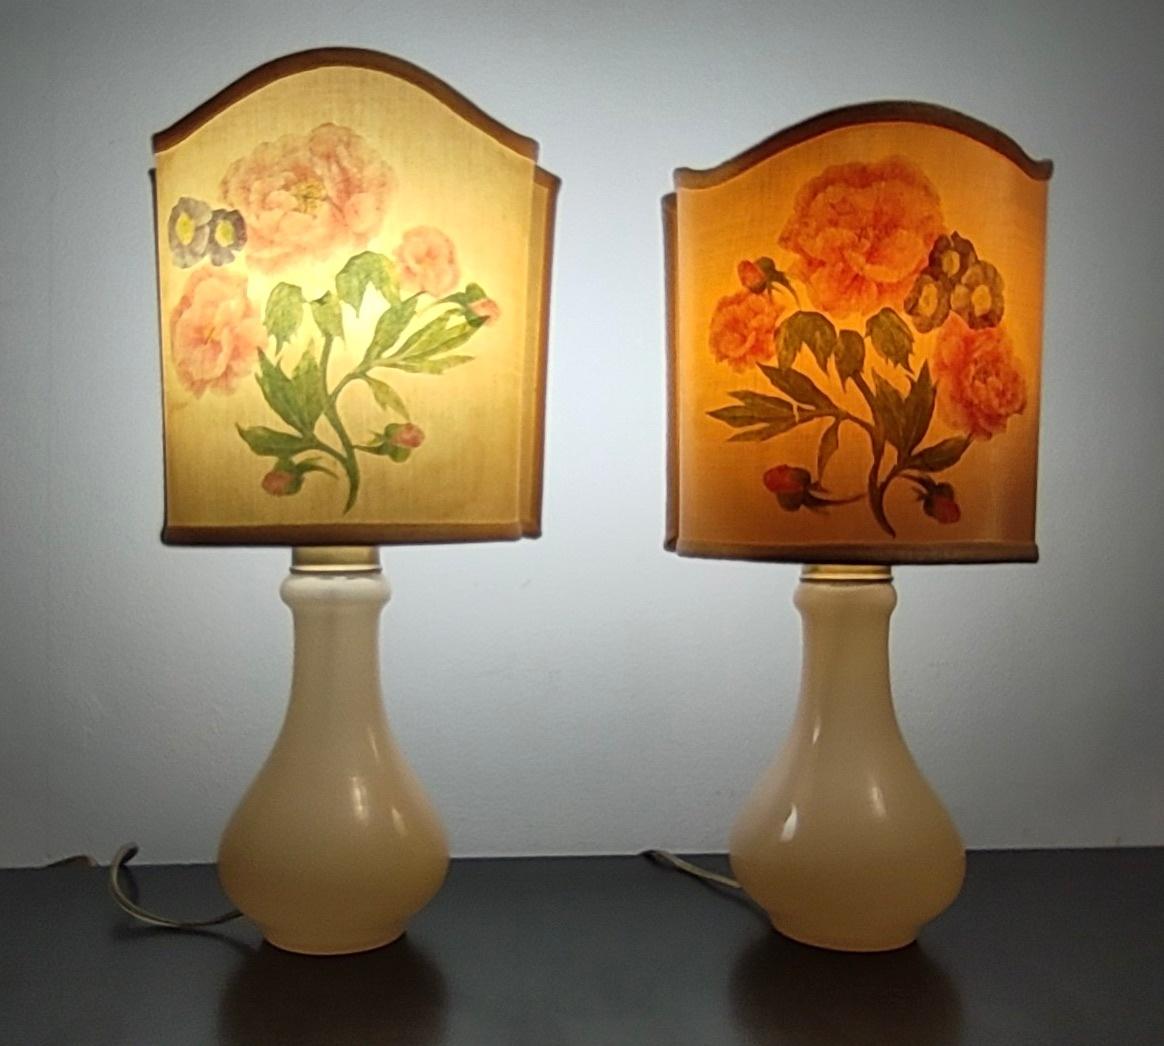 Fabriqué en Italie, années 1960
Ces lampes de table sont fabriquées en verre de Murano avec des éléments en laiton. 
Les abat-jour en tissu sont ornés d'un motif floral.
Ces lampes peuvent présenter de légères traces d'utilisation puisqu'elles